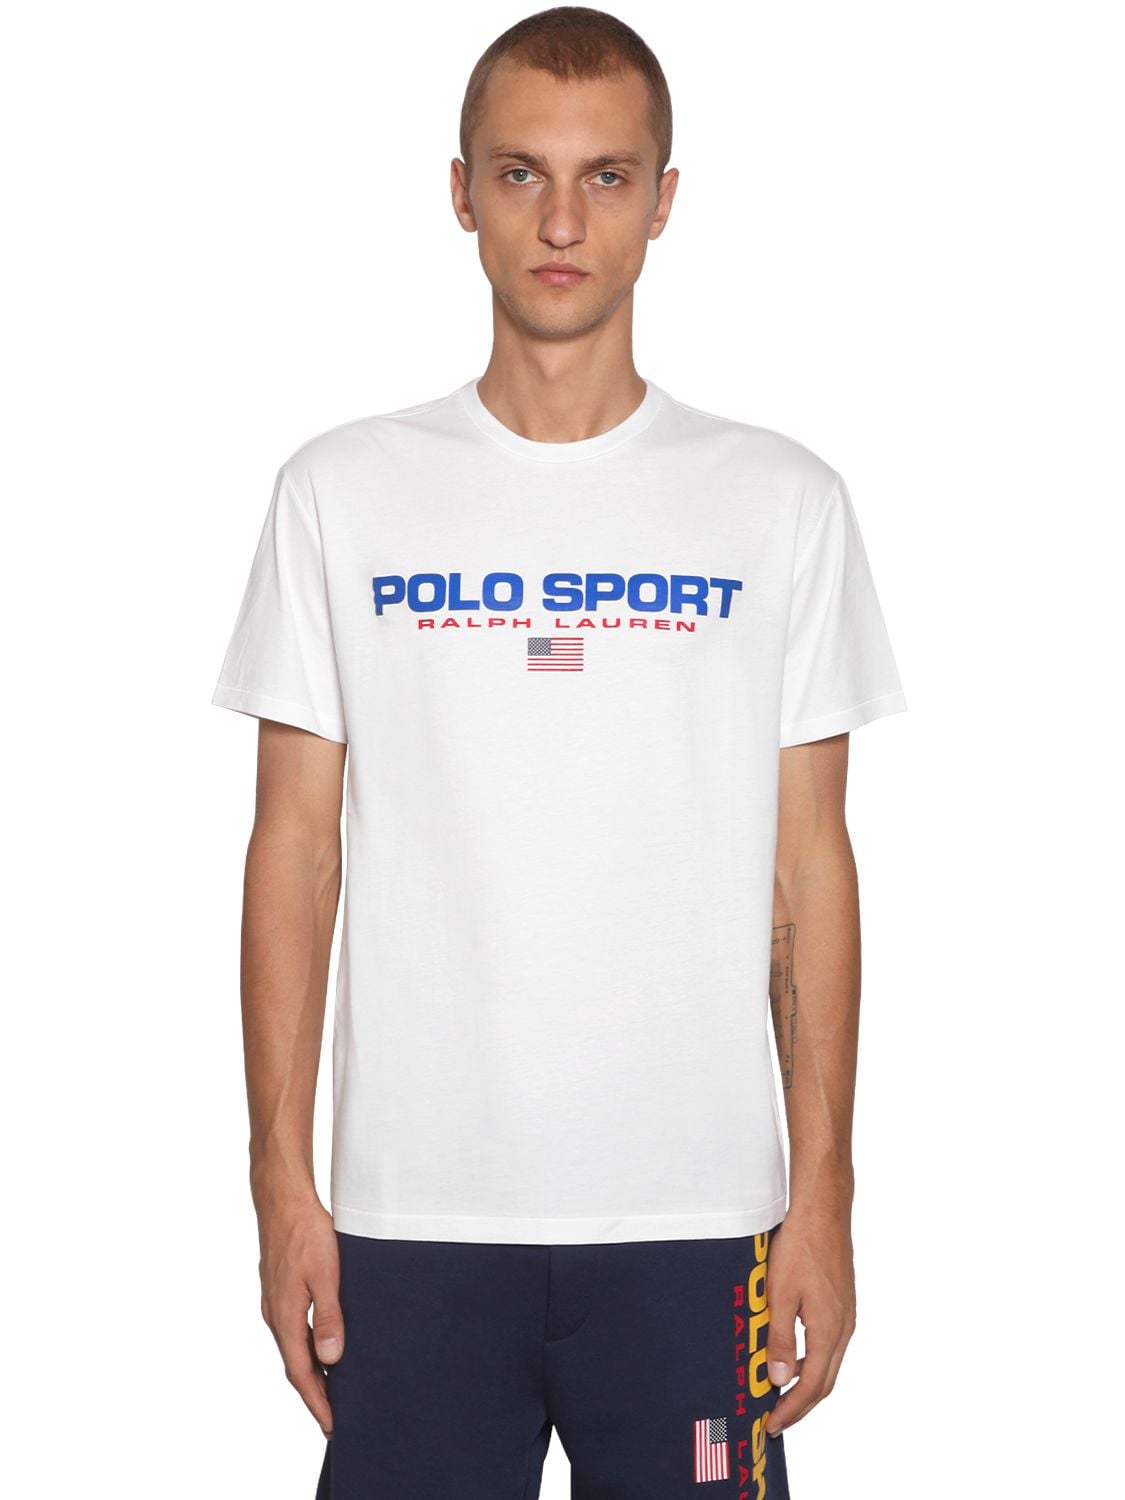 Polo Ralph Lauren Polo Sport Ralph 